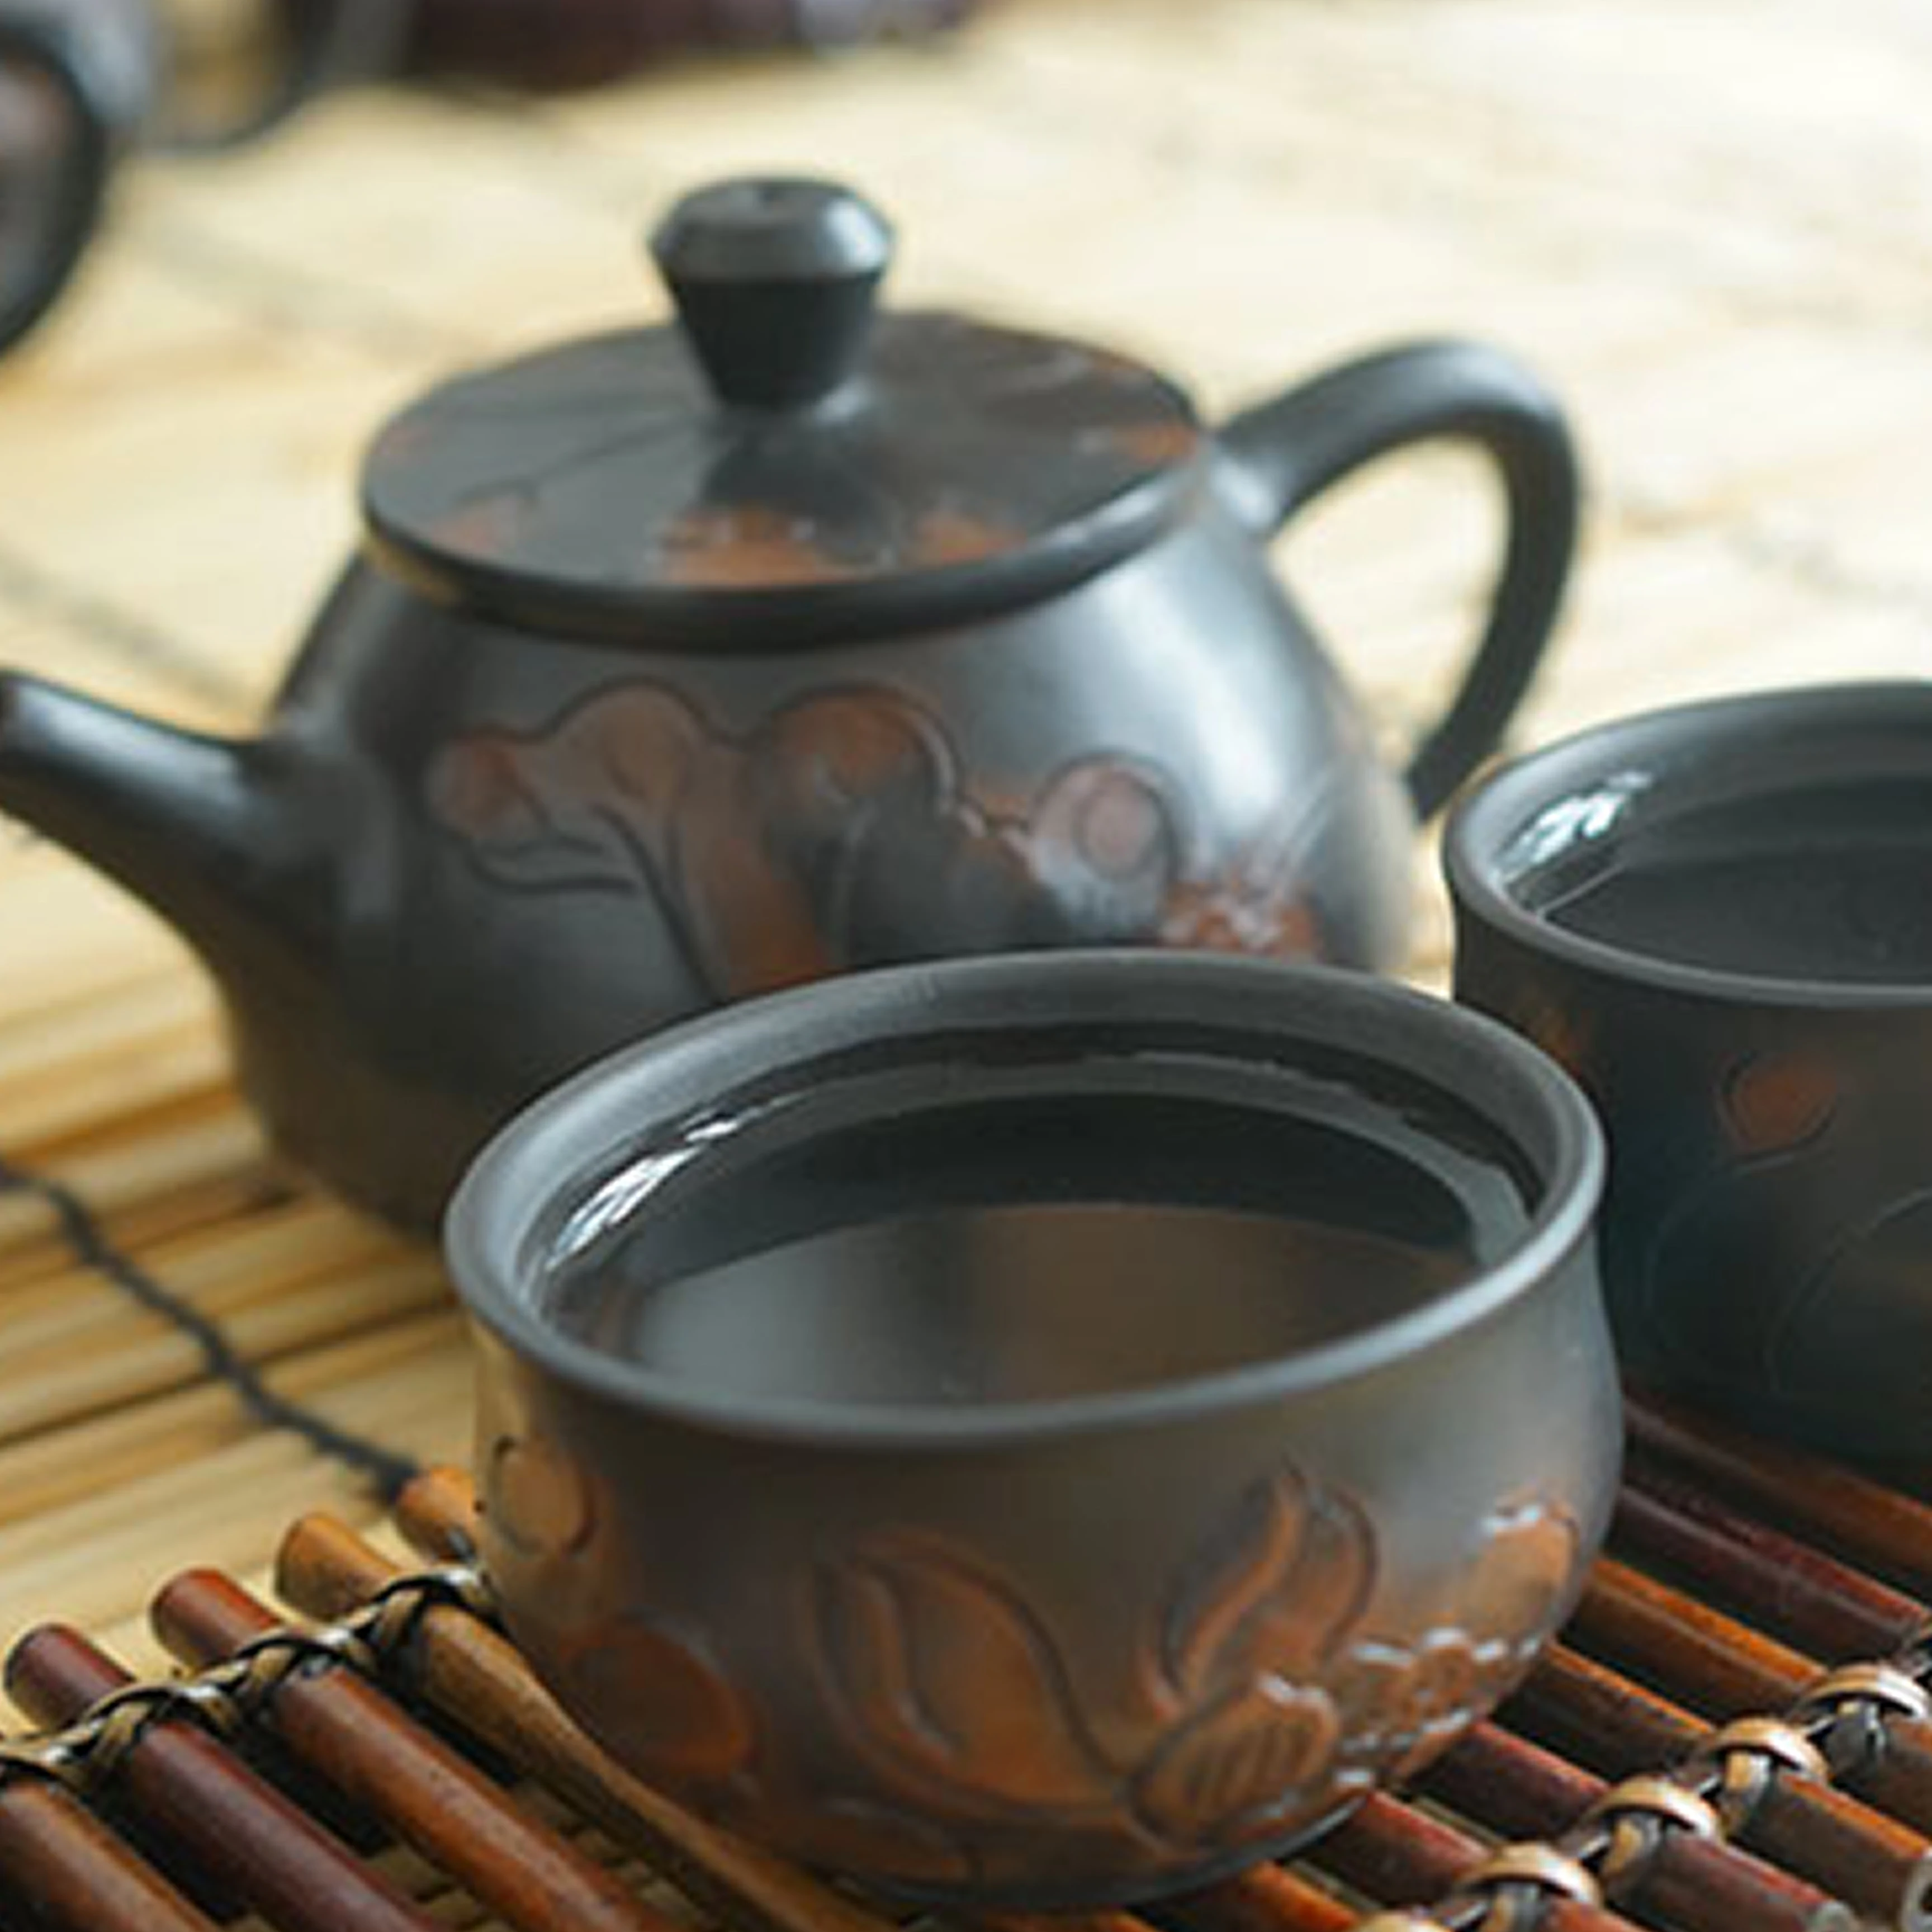 Китайская керамика Jianshui фиолетовый керамический чайник C1 керамический подарок